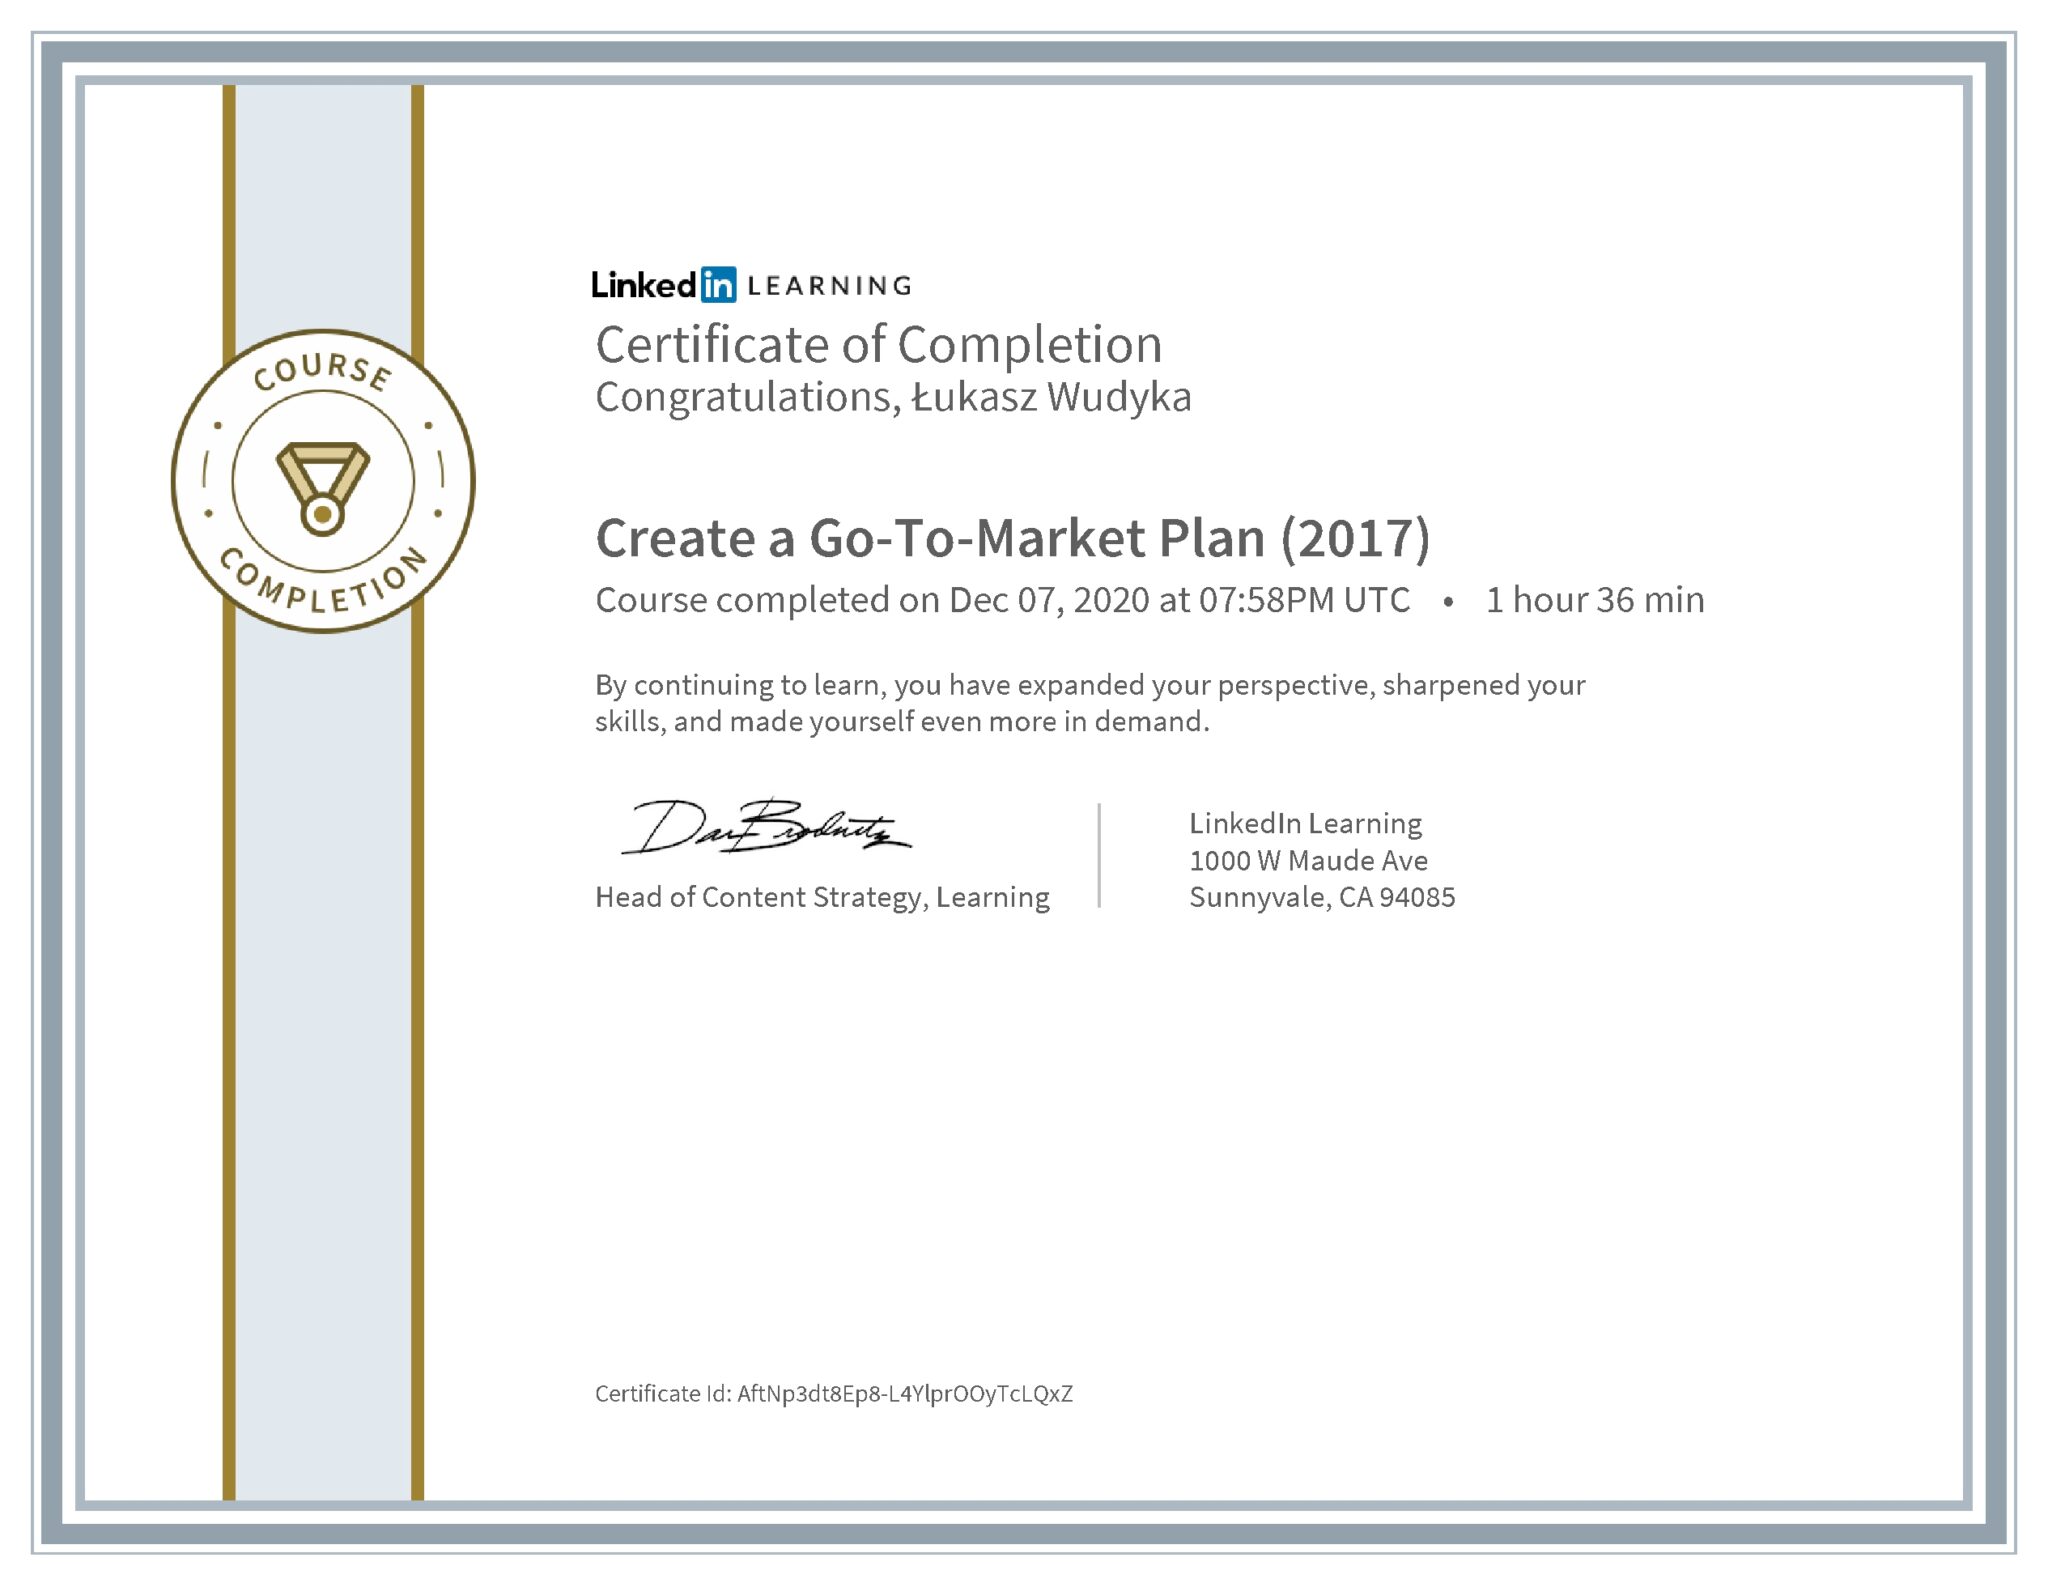 Łukasz Wudyka certyfikat LinkedIn Create a Go-To-Market Plan (2017)